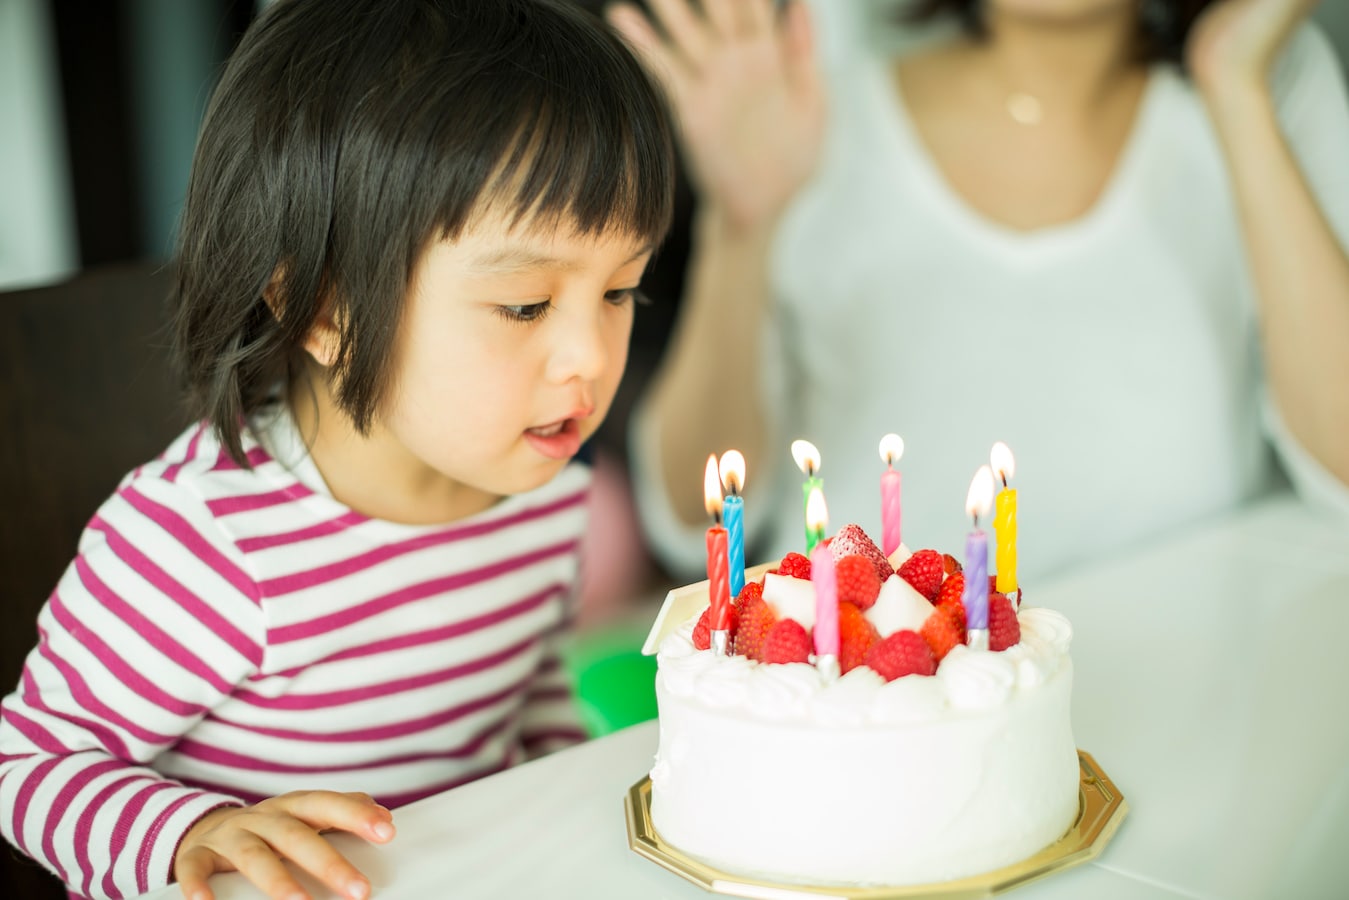 Tại sao tổ chức sinh nhật lại quan trọng đối với trẻ em? - Ảnh 1.